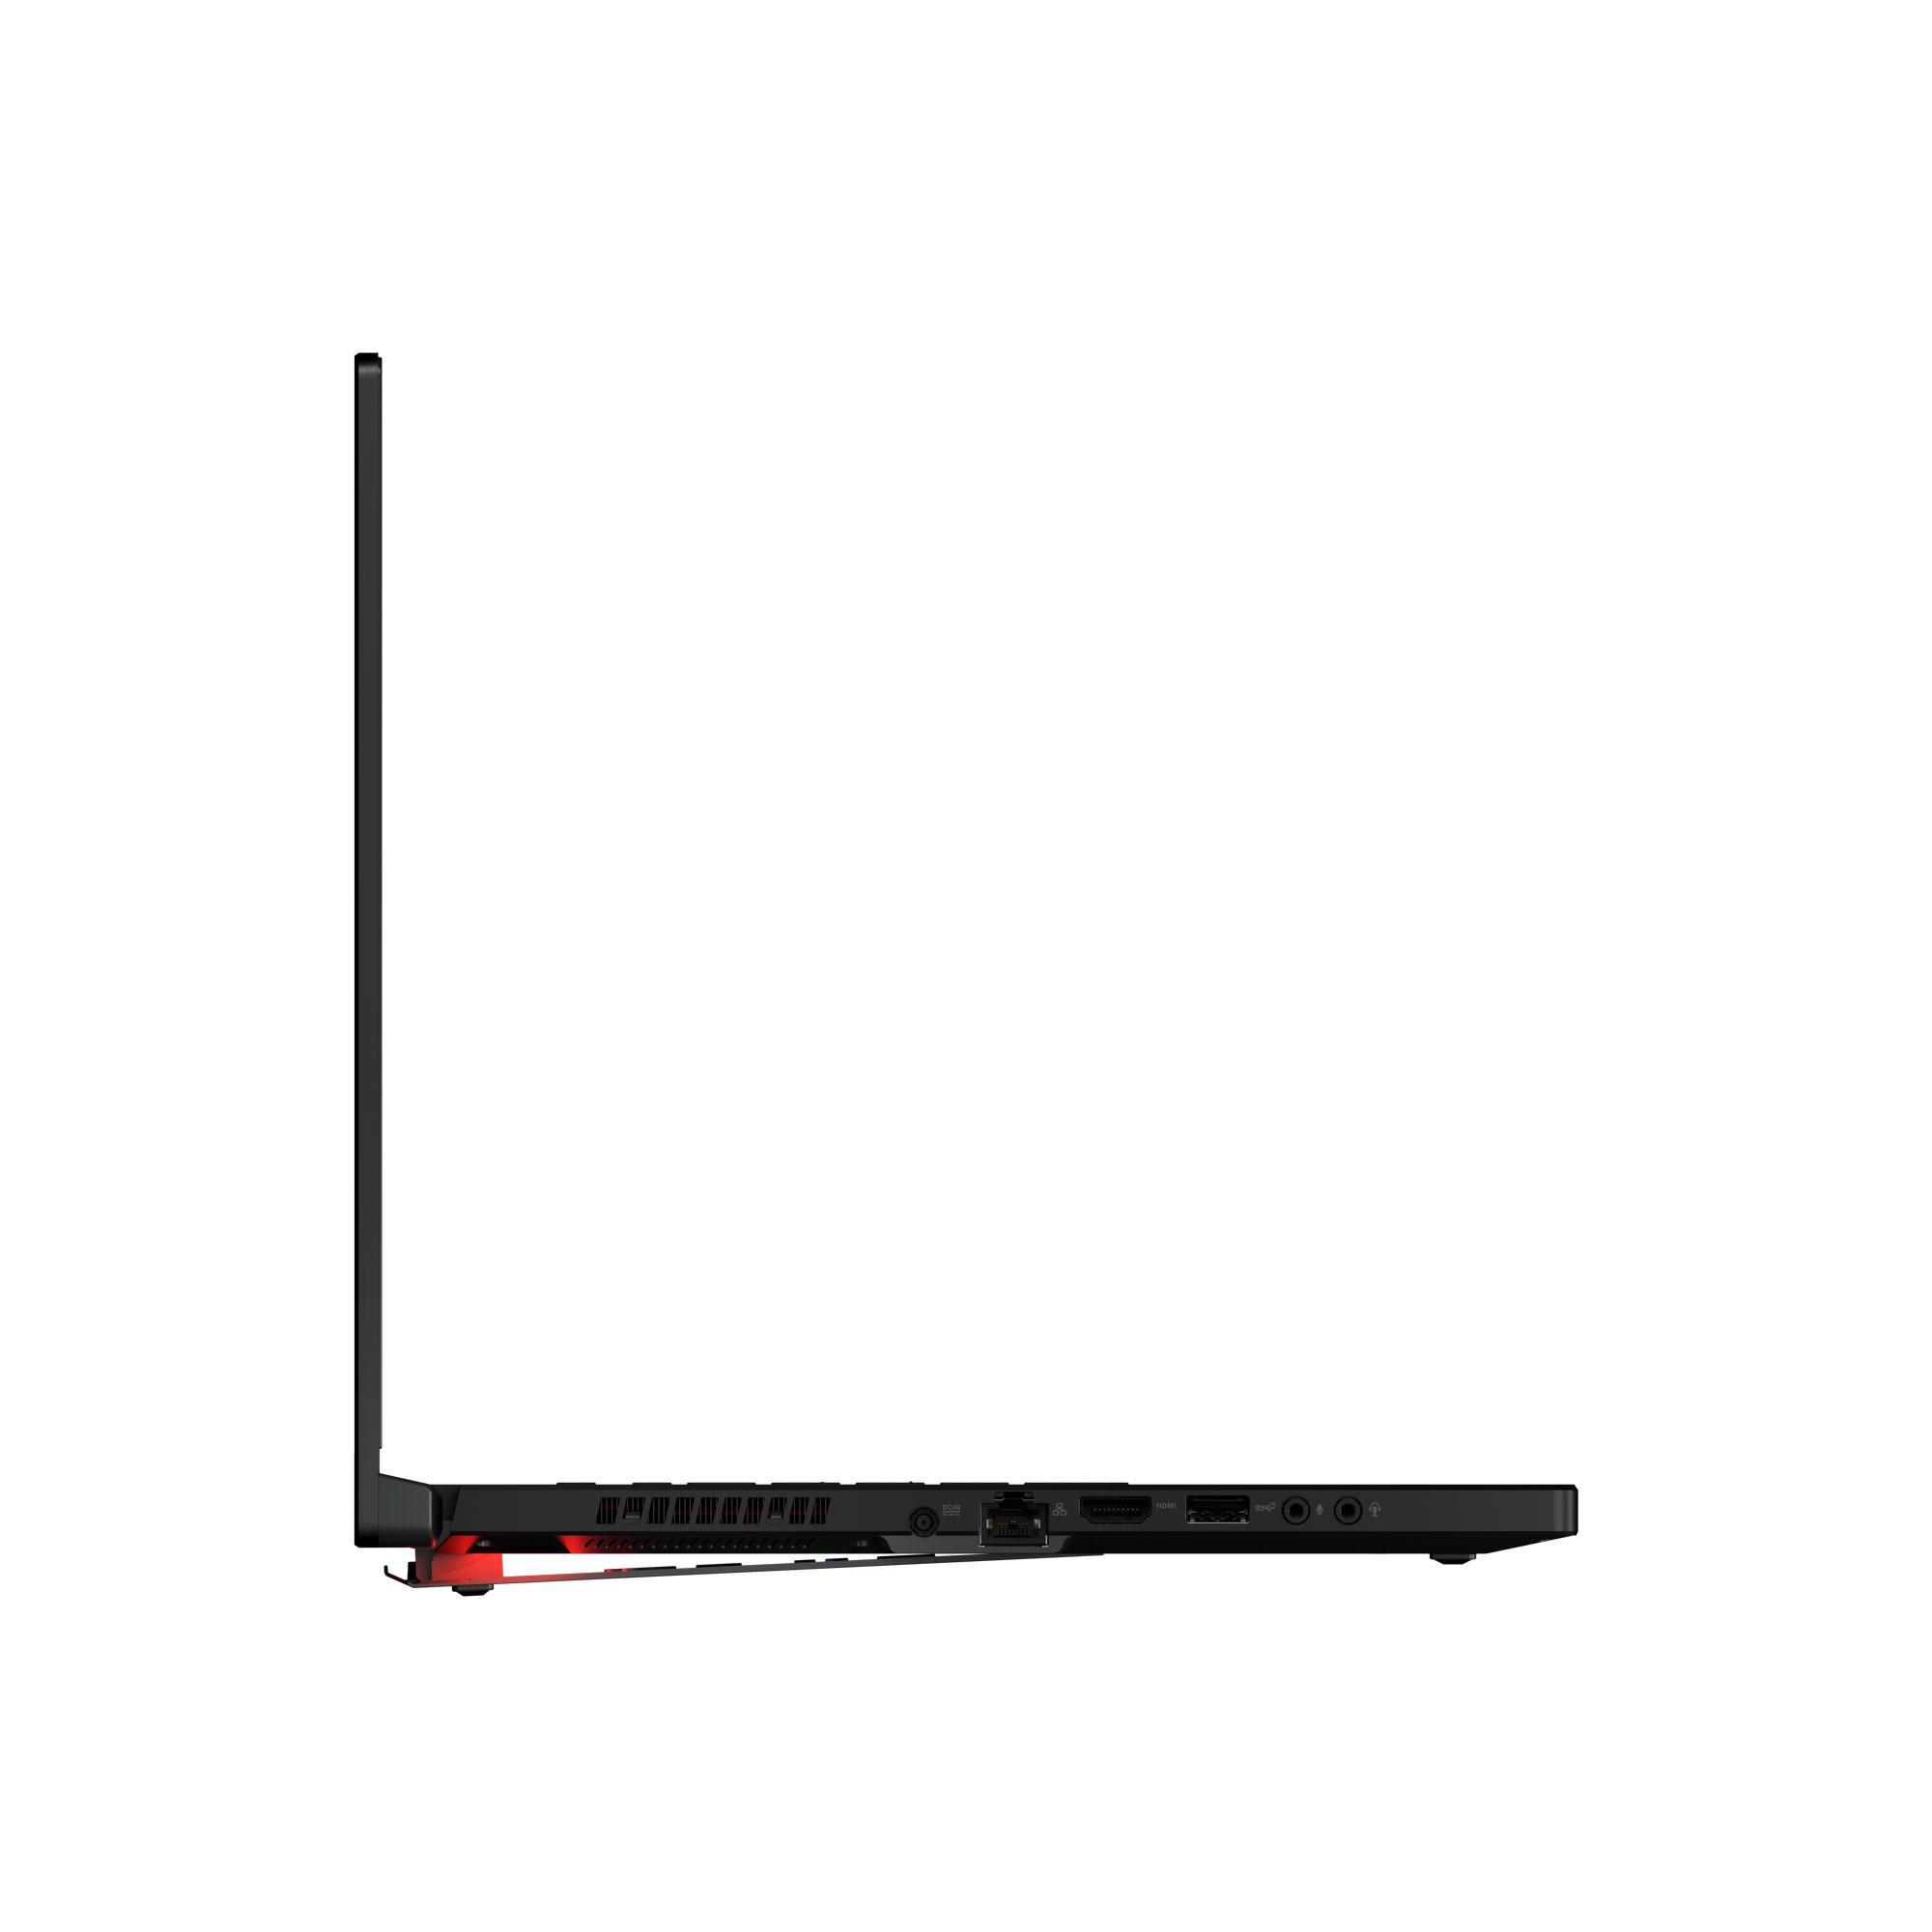 ASUS предлагает максимально мощный ноутбук ROG Zephyrus S GX502